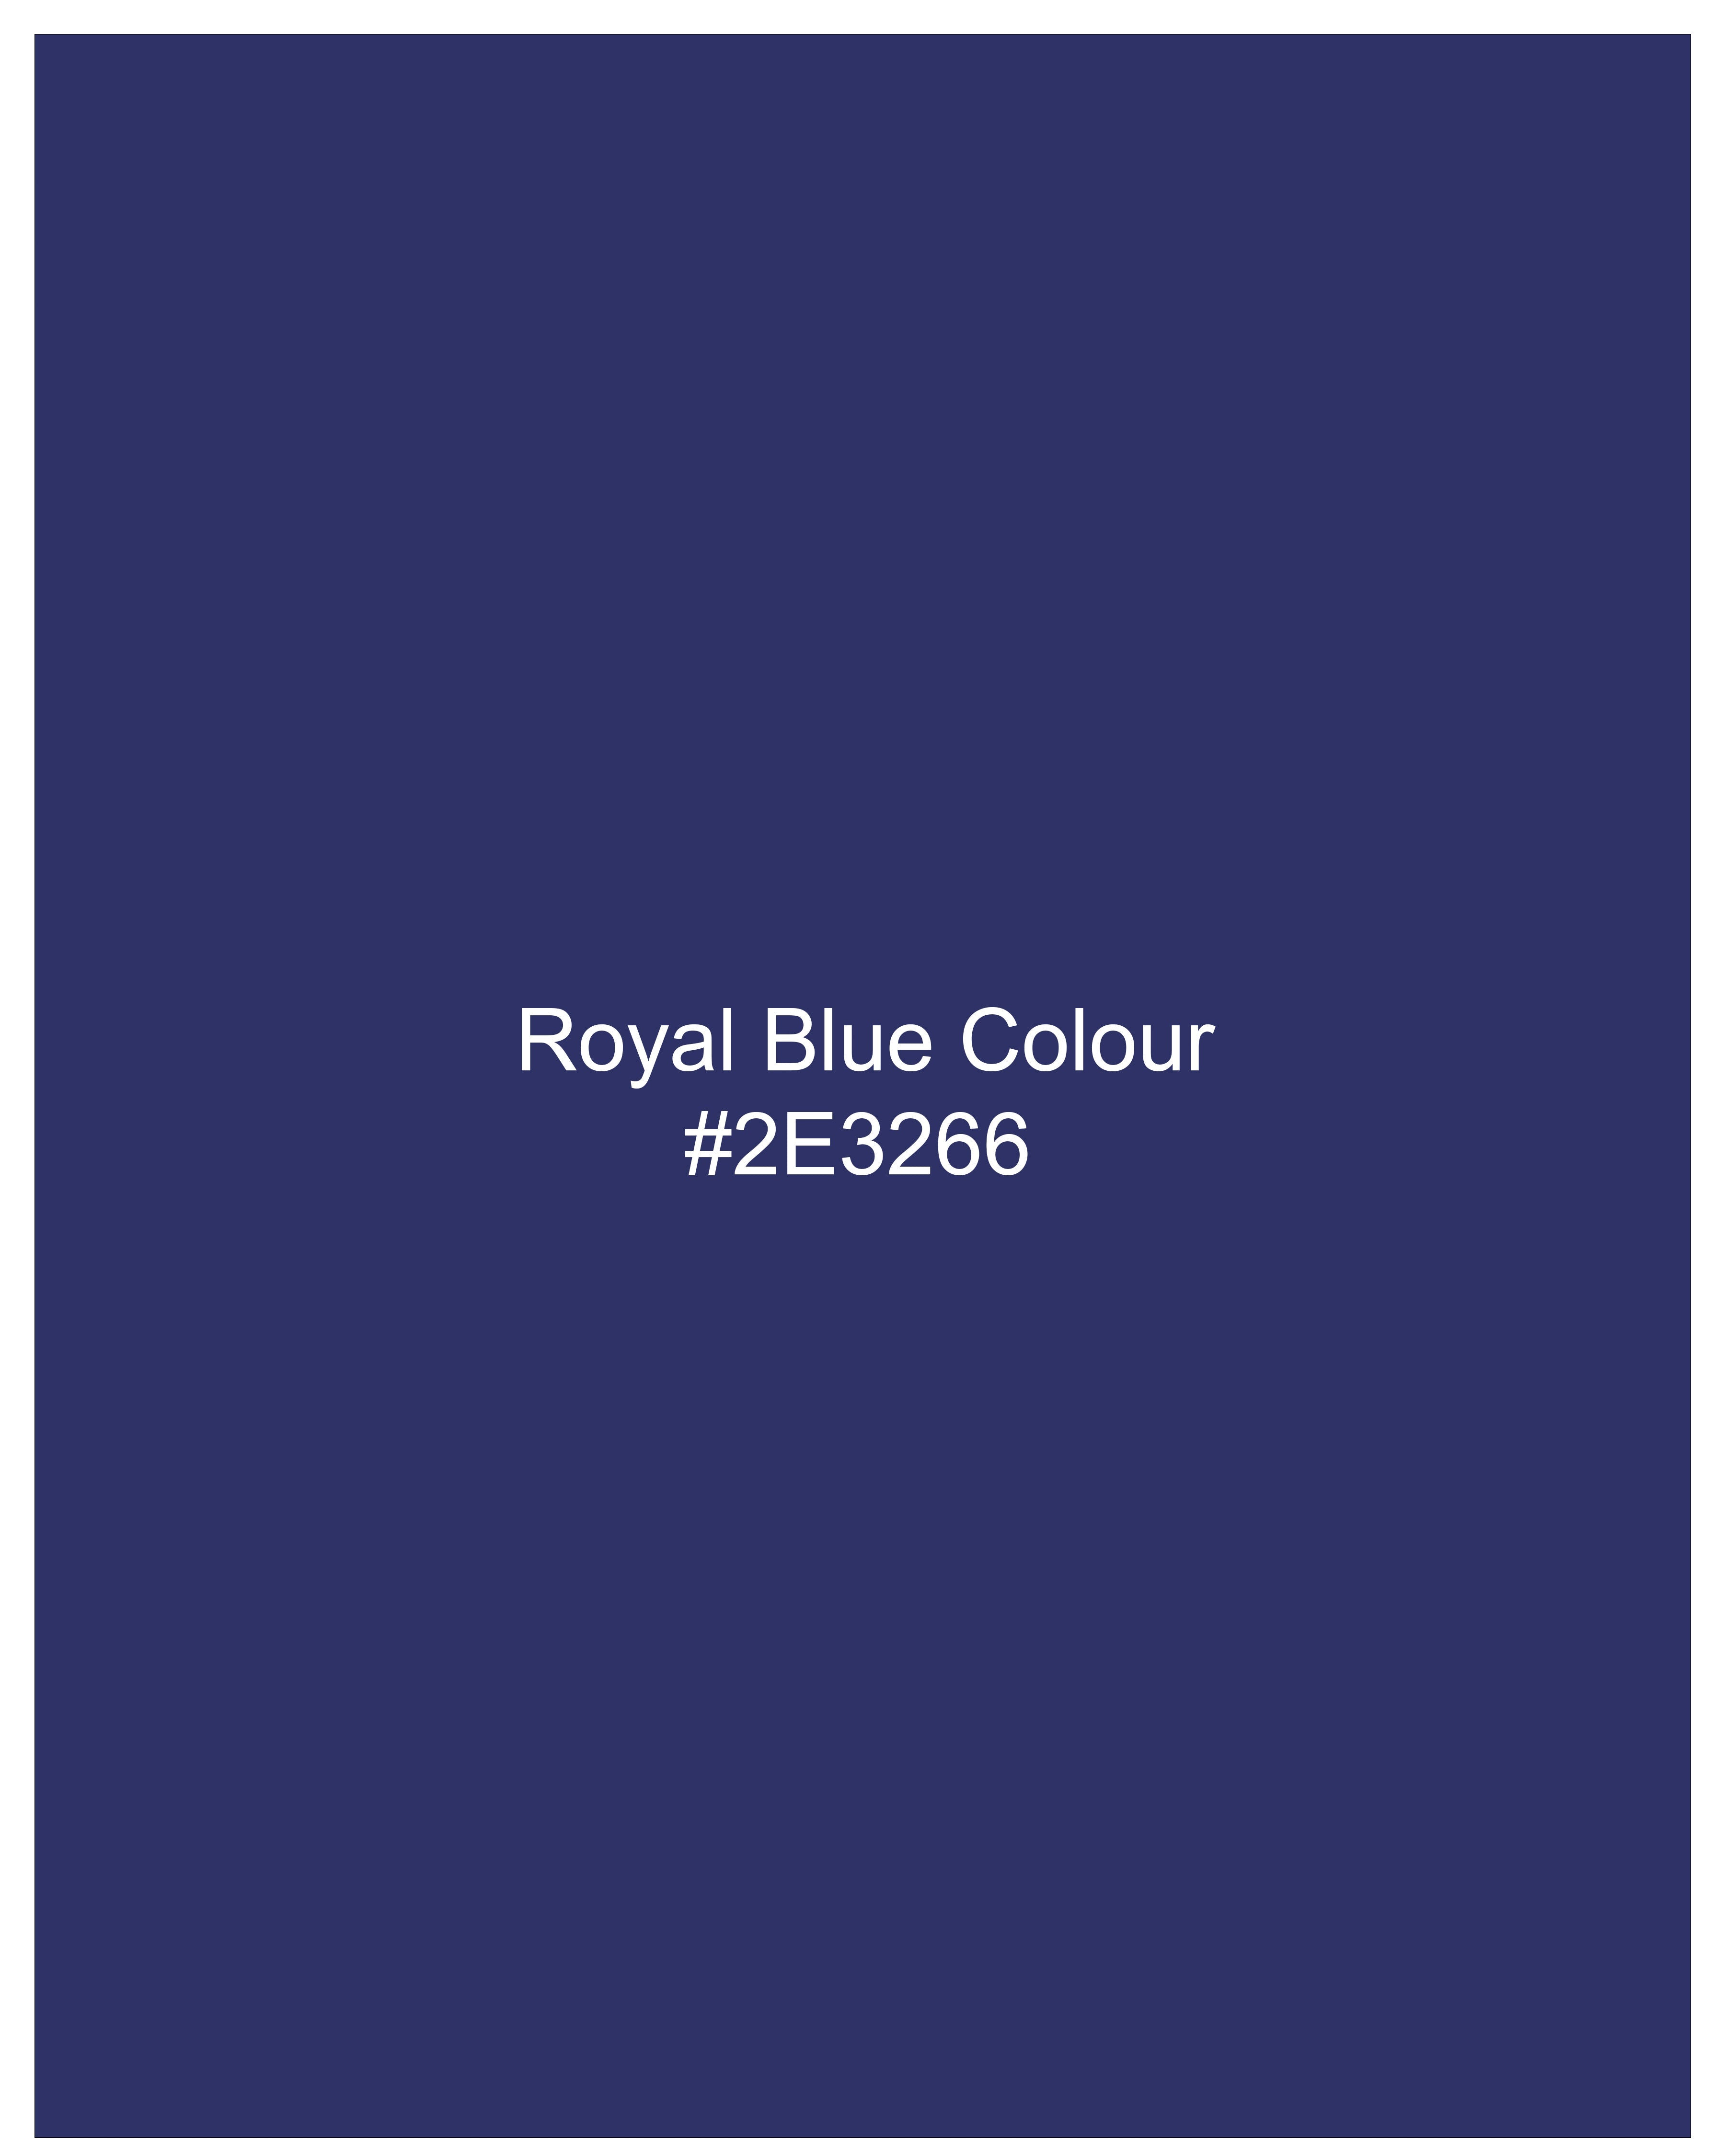 Royal Blue Cross Buttoned Bandhgala Blazer BL2454-CBG-36, BL2454-CBG-38, BL2454-CBG-40, BL2454-CBG-42, BL2454-CBG-44, BL2454-CBG-46, BL2454-CBG-48, BL2454-CBG-50, BL2454-CBG-52, BL2454-CBG-54, BL2454-CBG-56, BL2454-CBG-58, BL2454-CBG-60